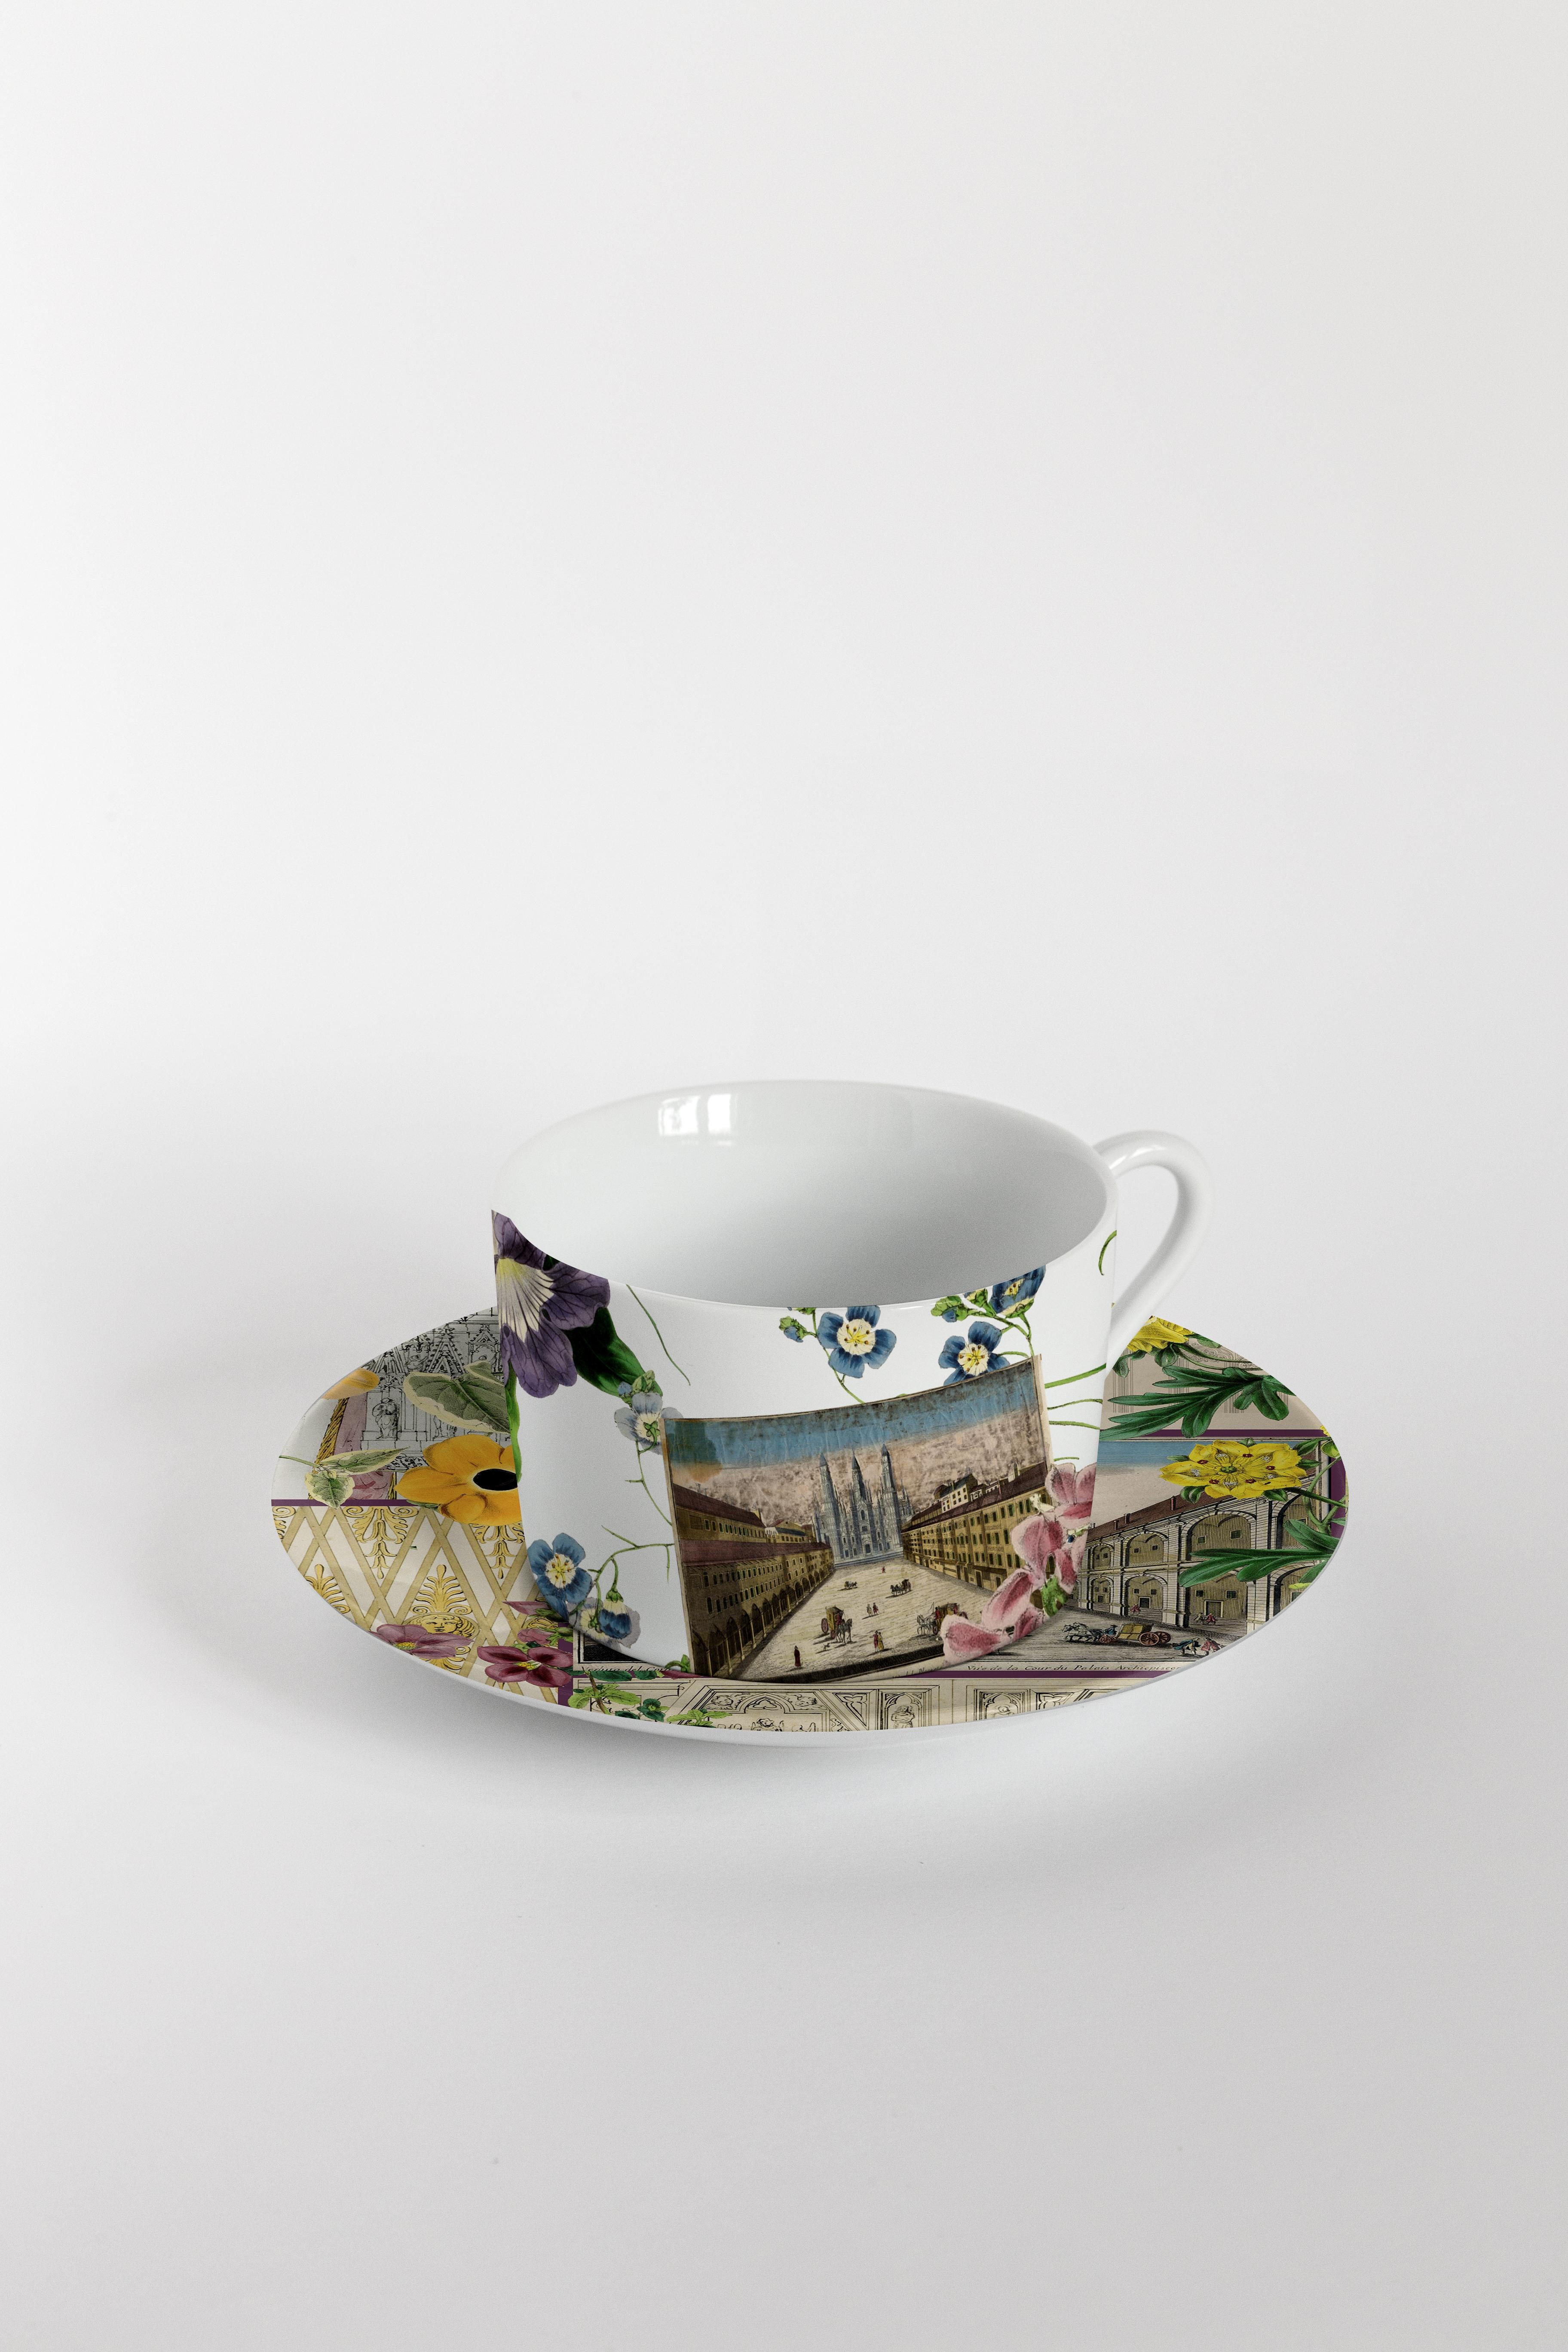 De la rencontre entre les archives historiques du Duomo di Milano et l'imagerie de Vito Nesta Grand Tour, sont nées ces collections uniques de porcelaines et de tissus. 